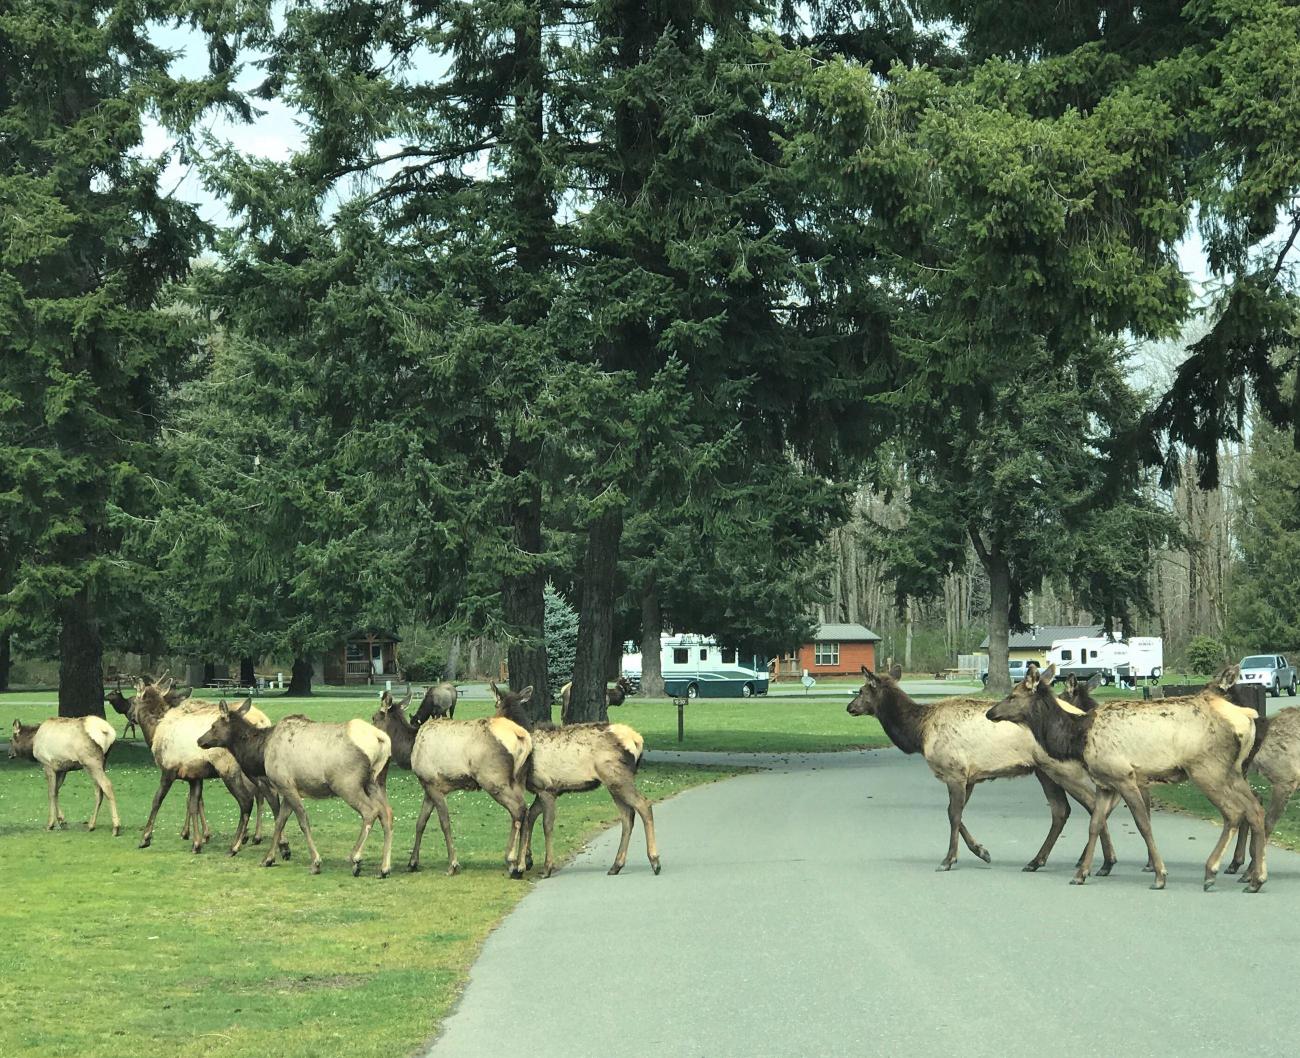 A herd of elk cross the road.